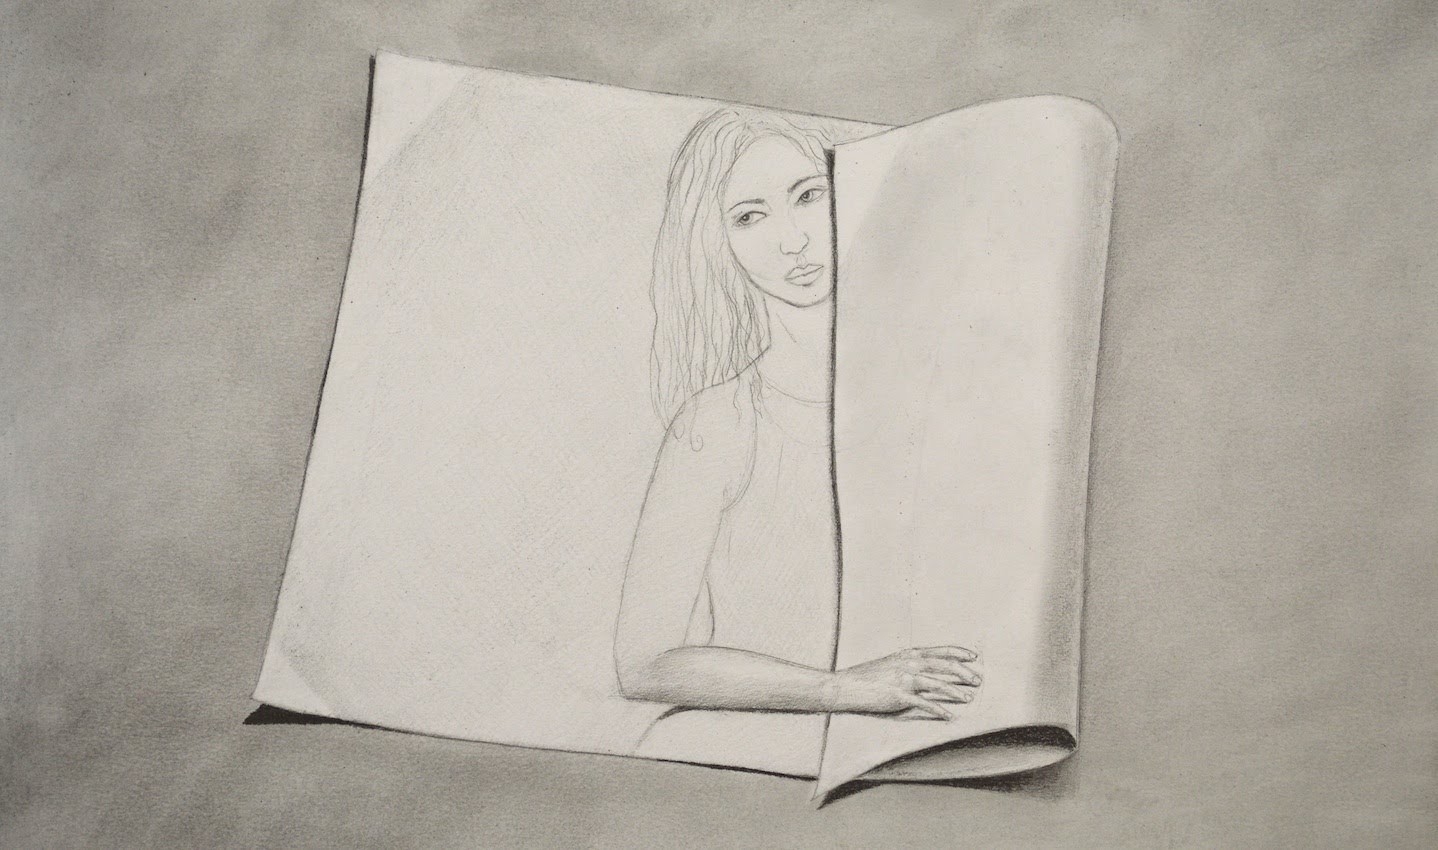 Cómo dibujar una mujer en un papel enrollado 3D - Arte Divierte.